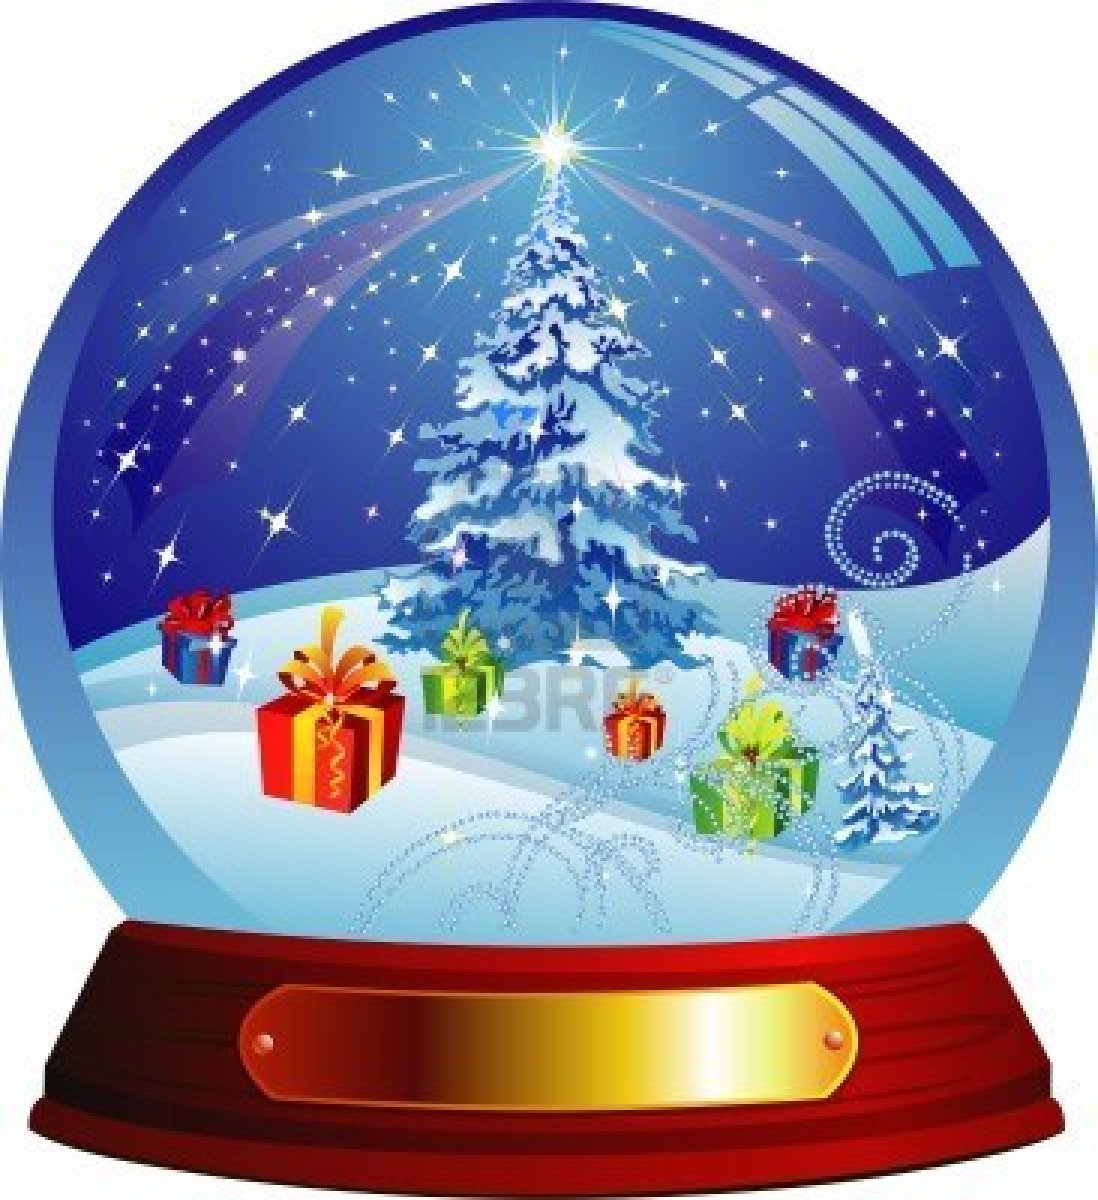 Christmas snow globe clipart 